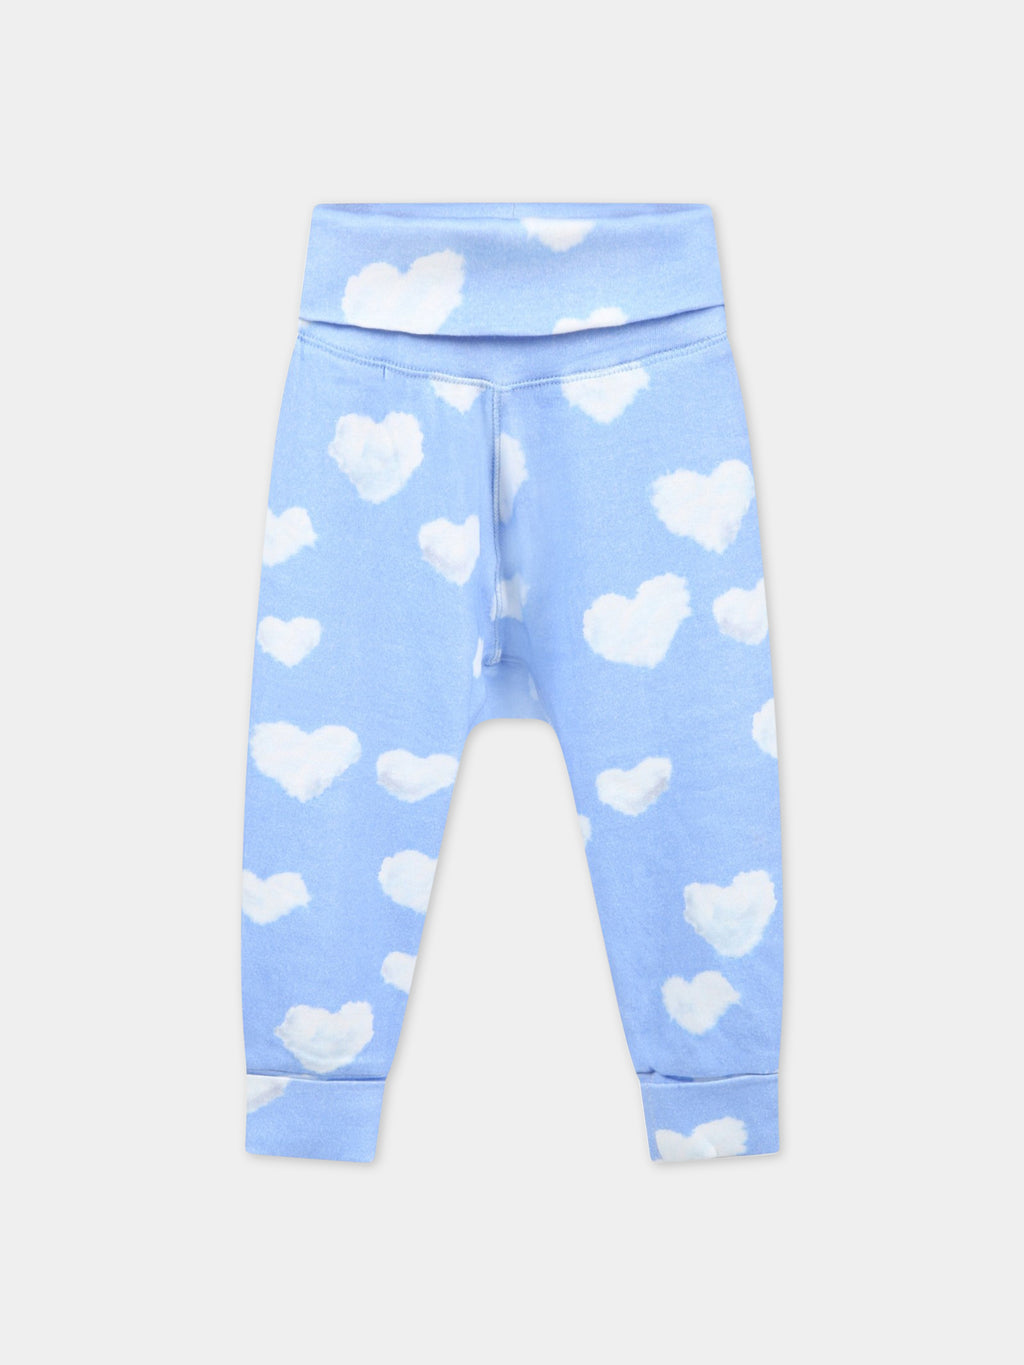 Pantalon bleu clair de survêtement pour bébé enfants avec nuages